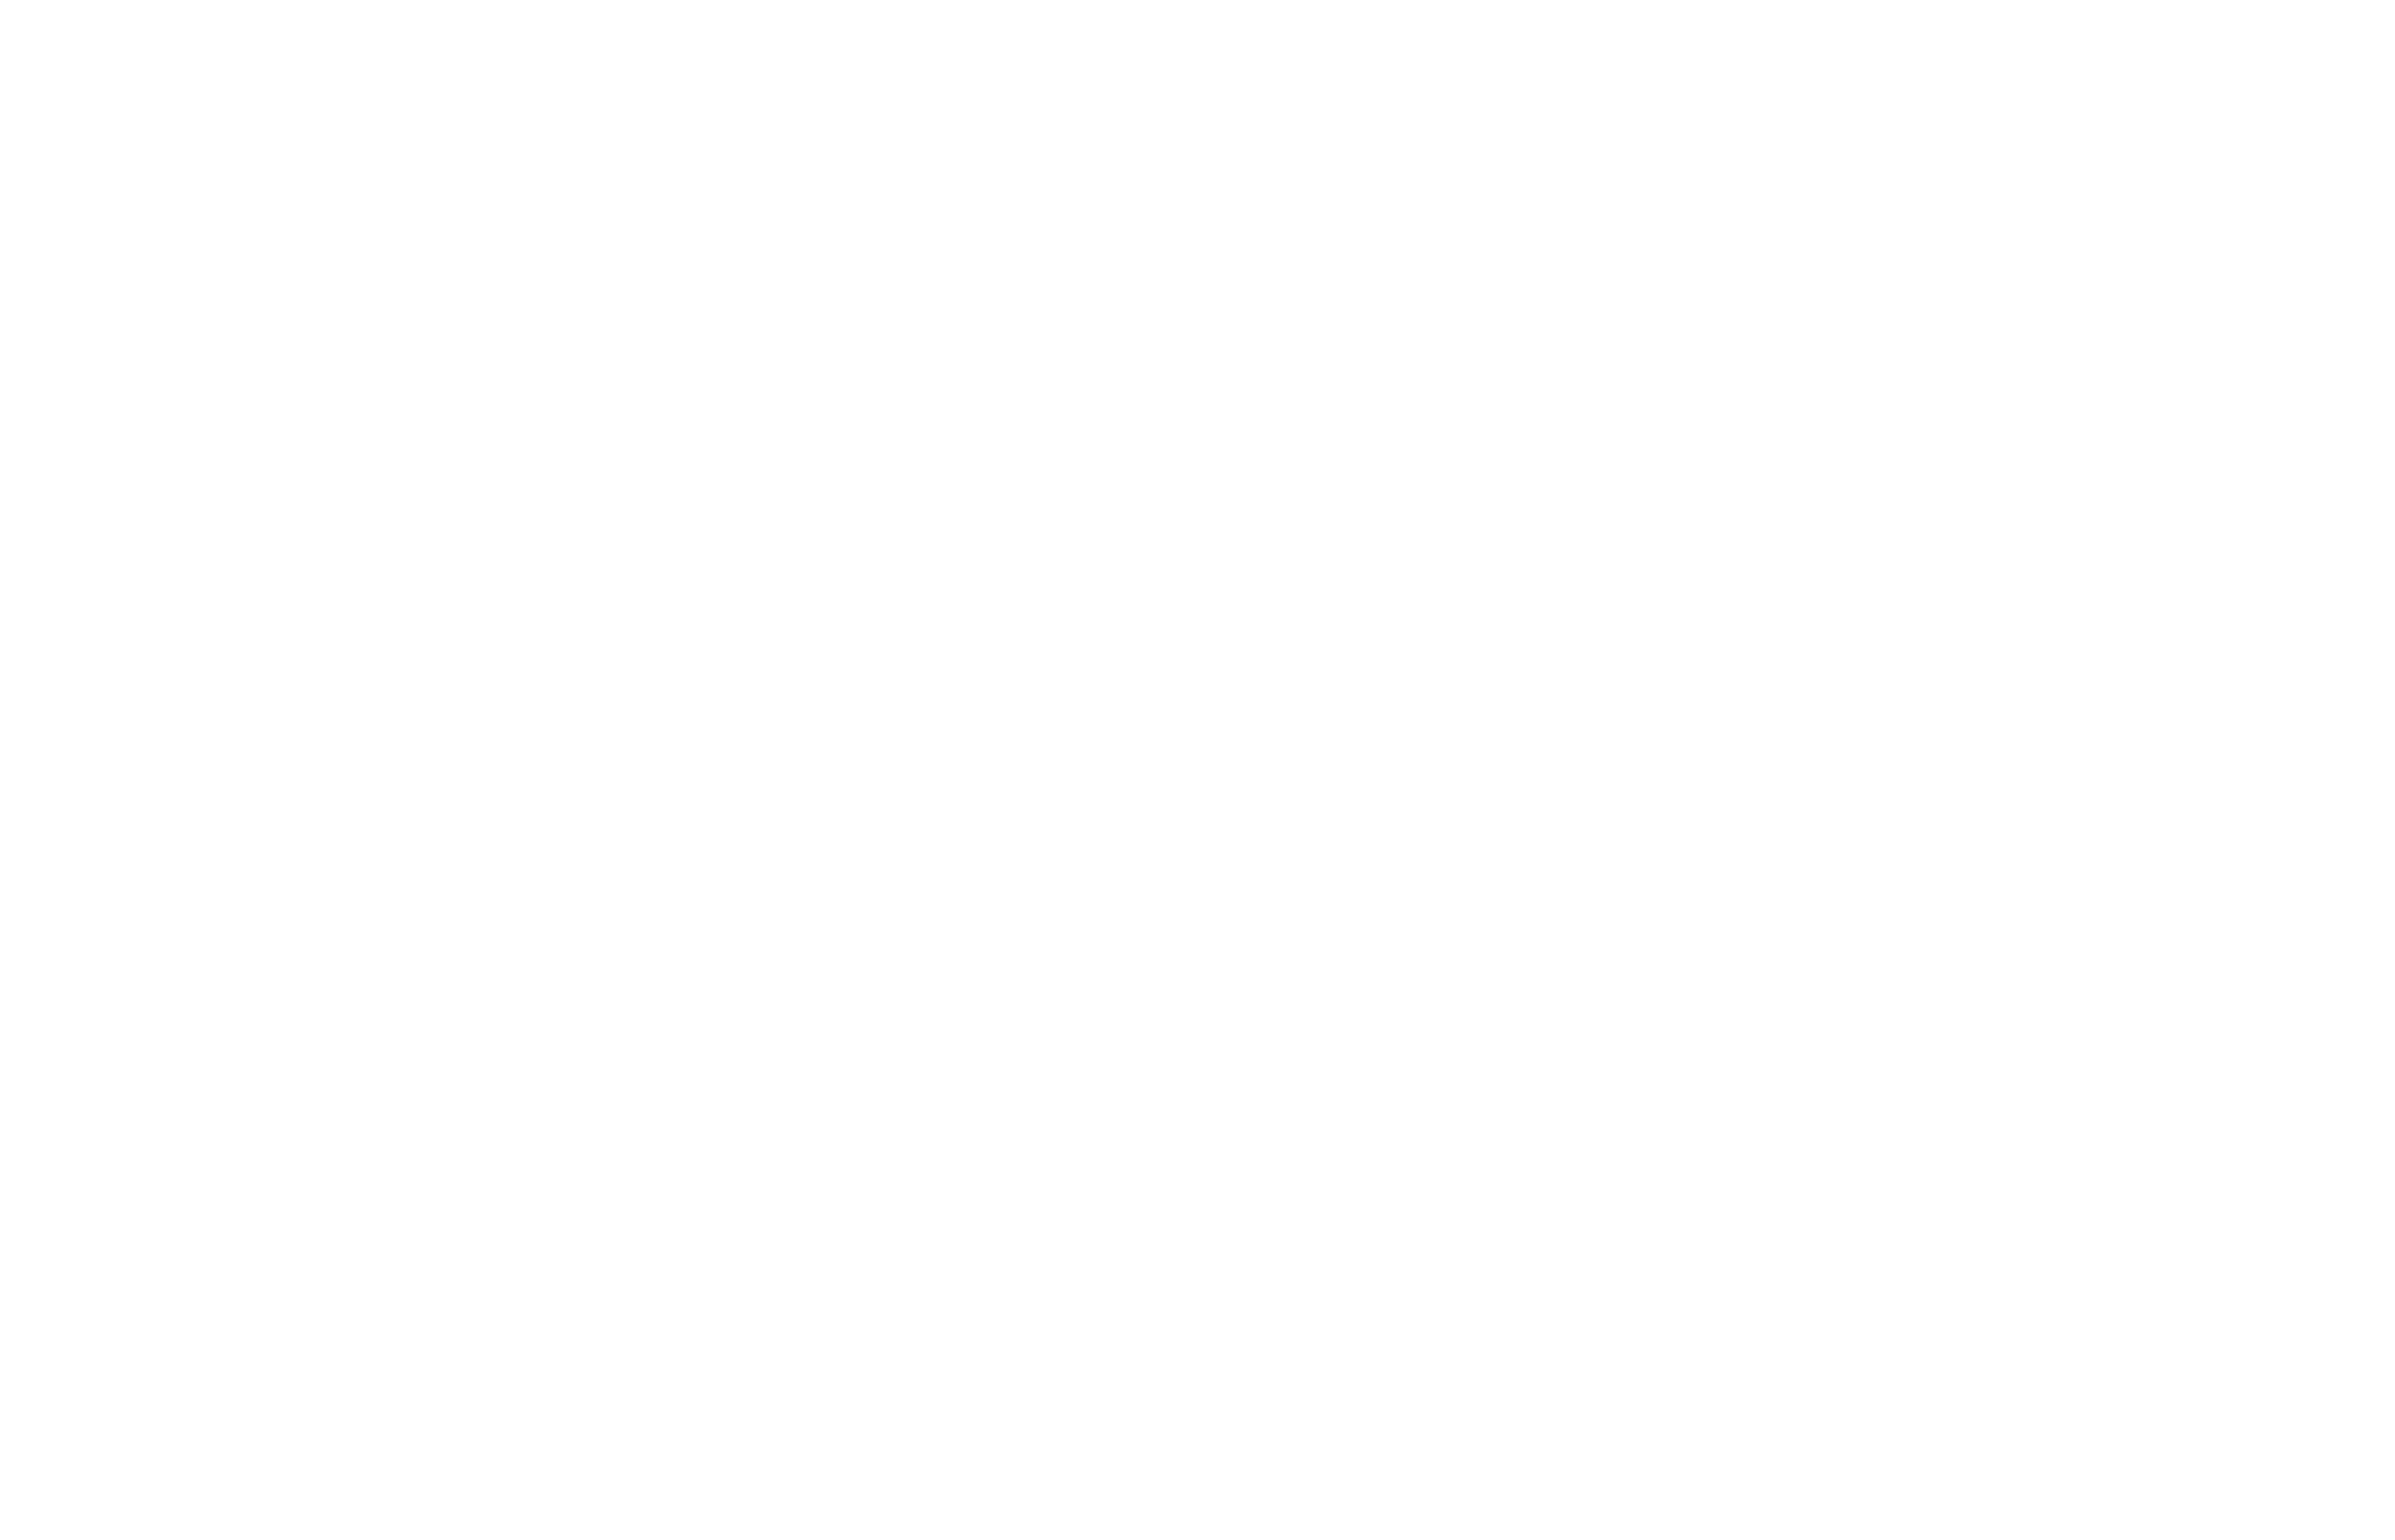 An SK Films Release